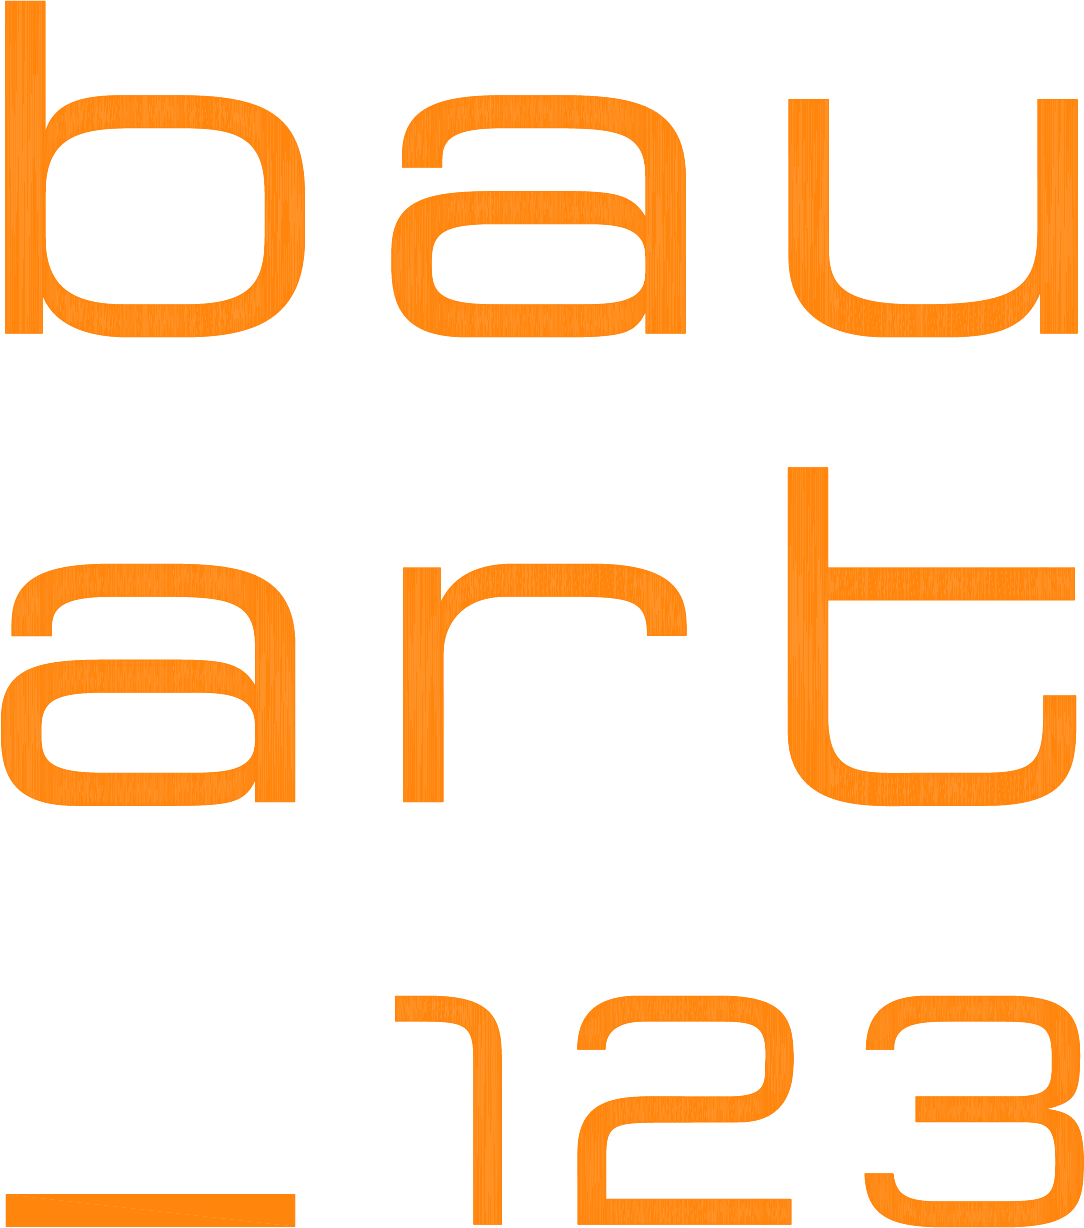 baurt_123